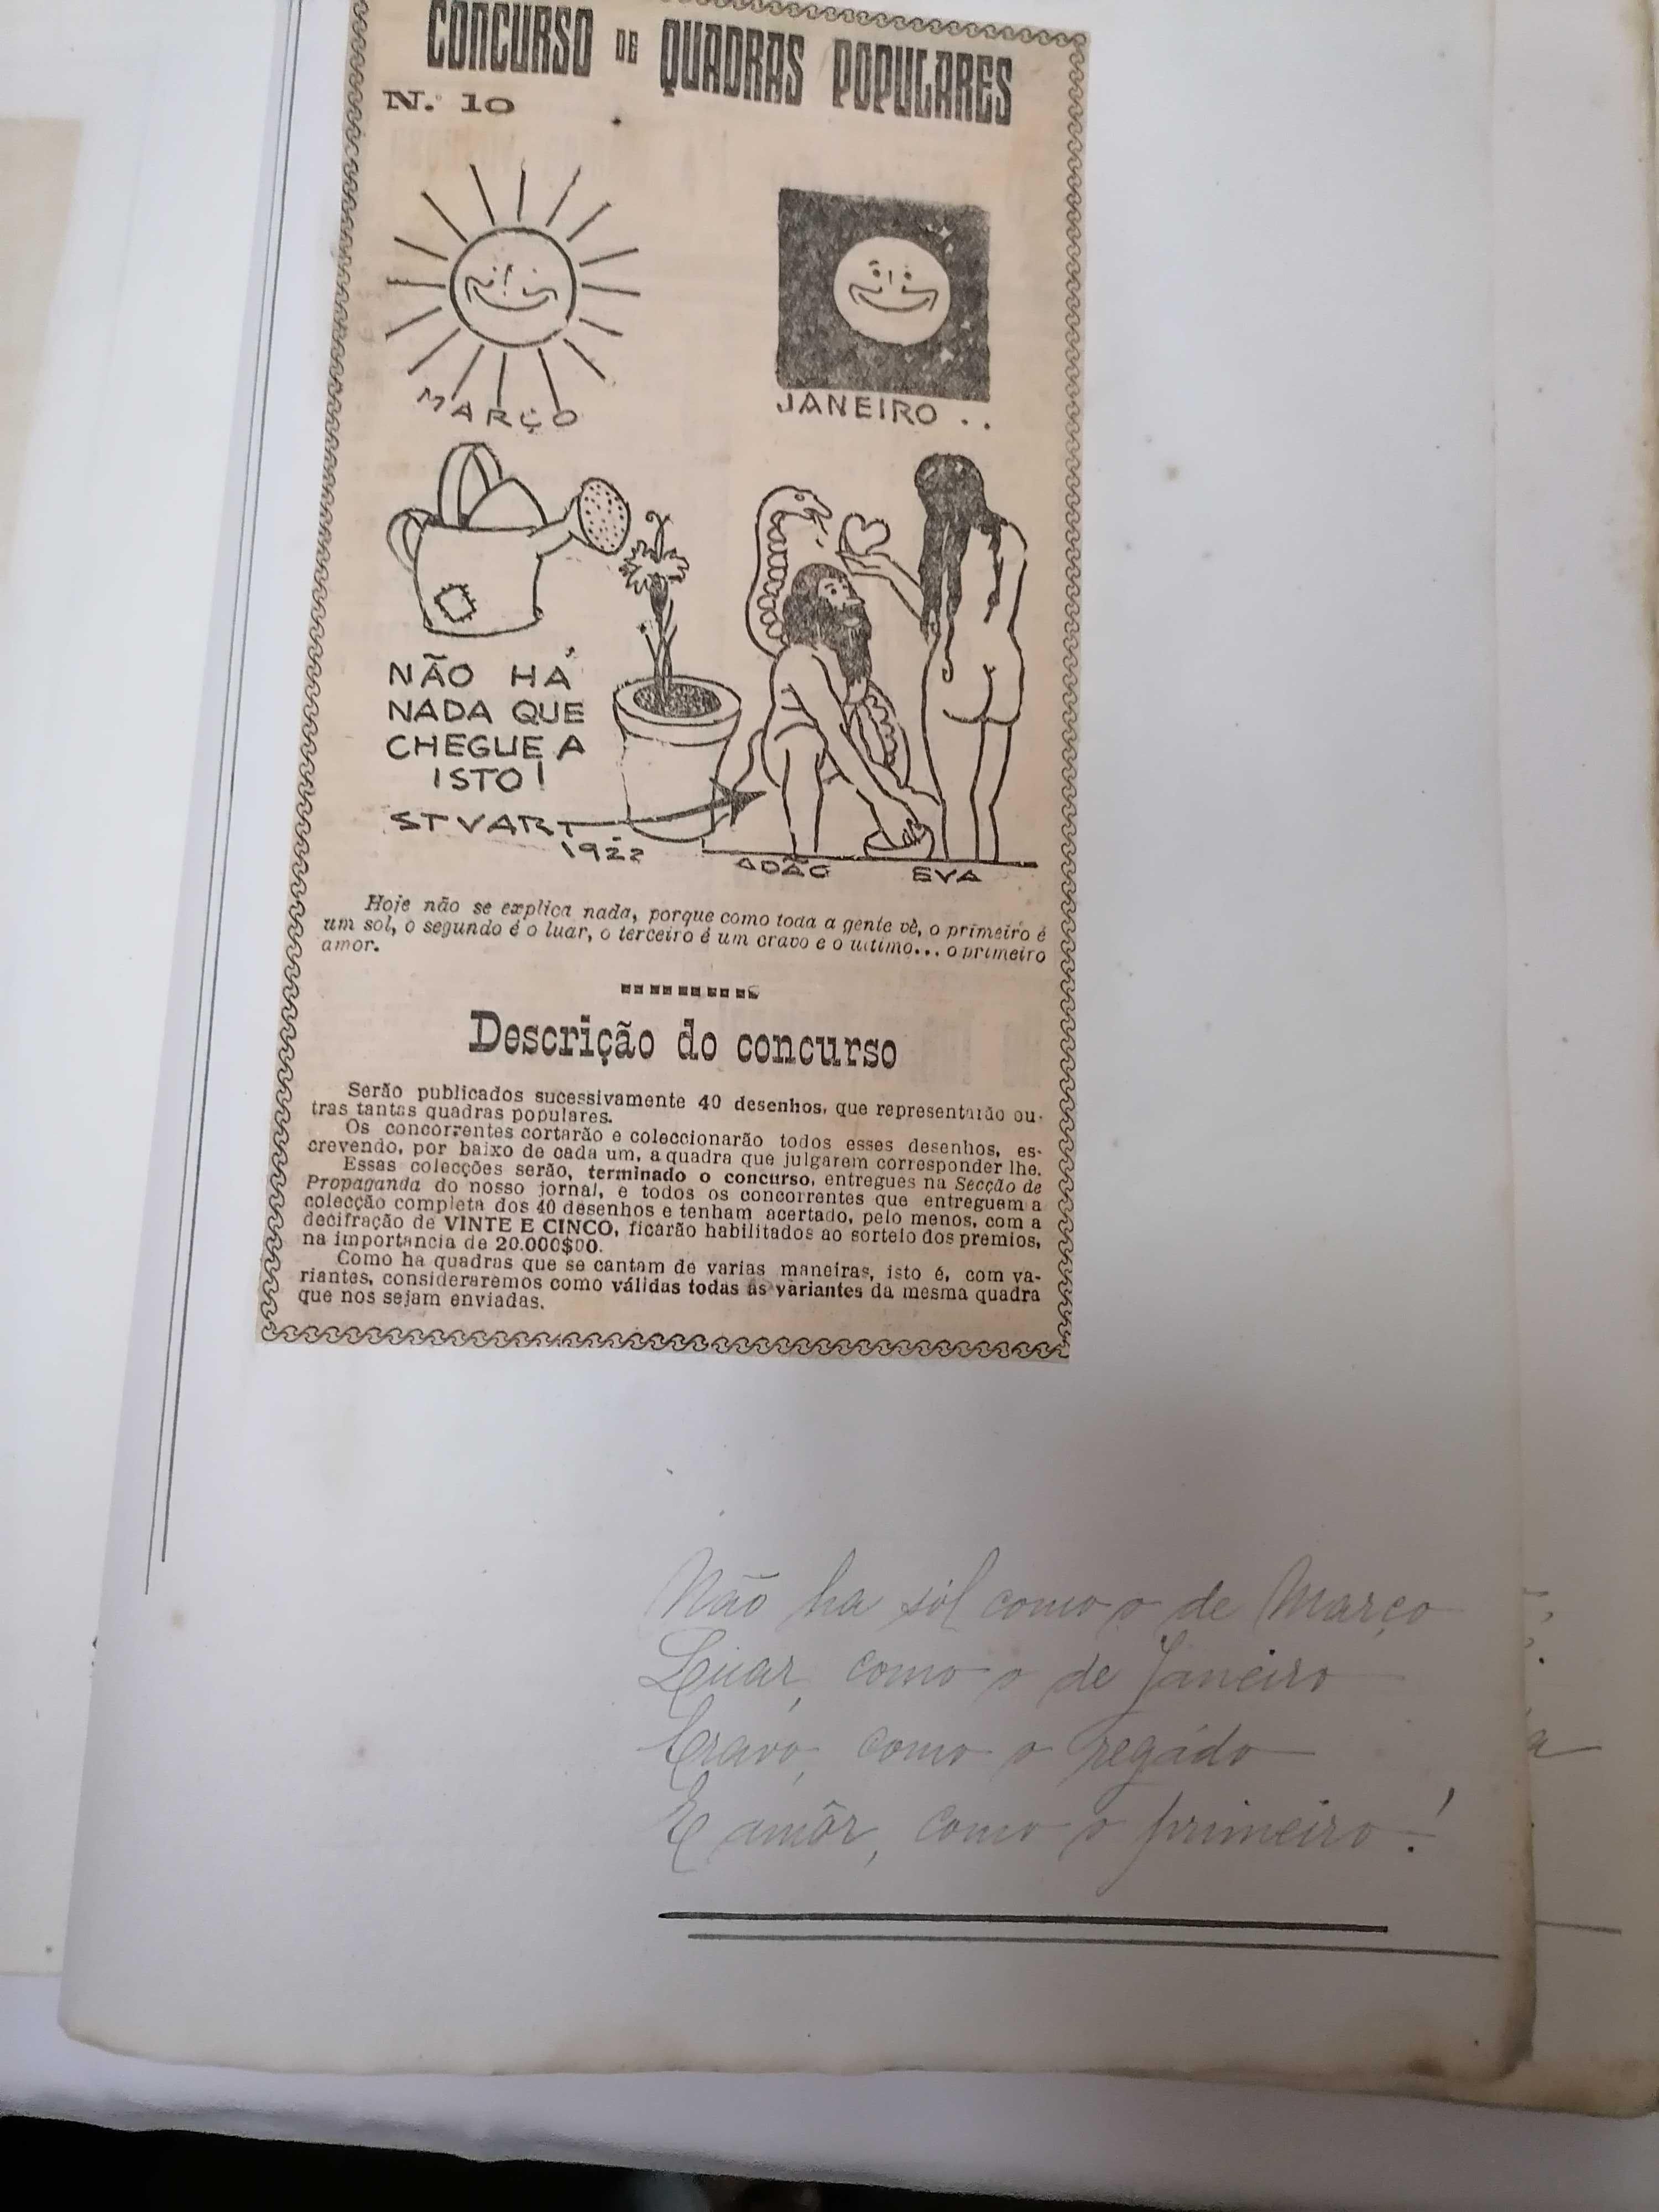 Artigo Único - STUART Caderneta QUADRAS POPULARES 1922 Diário Notícias